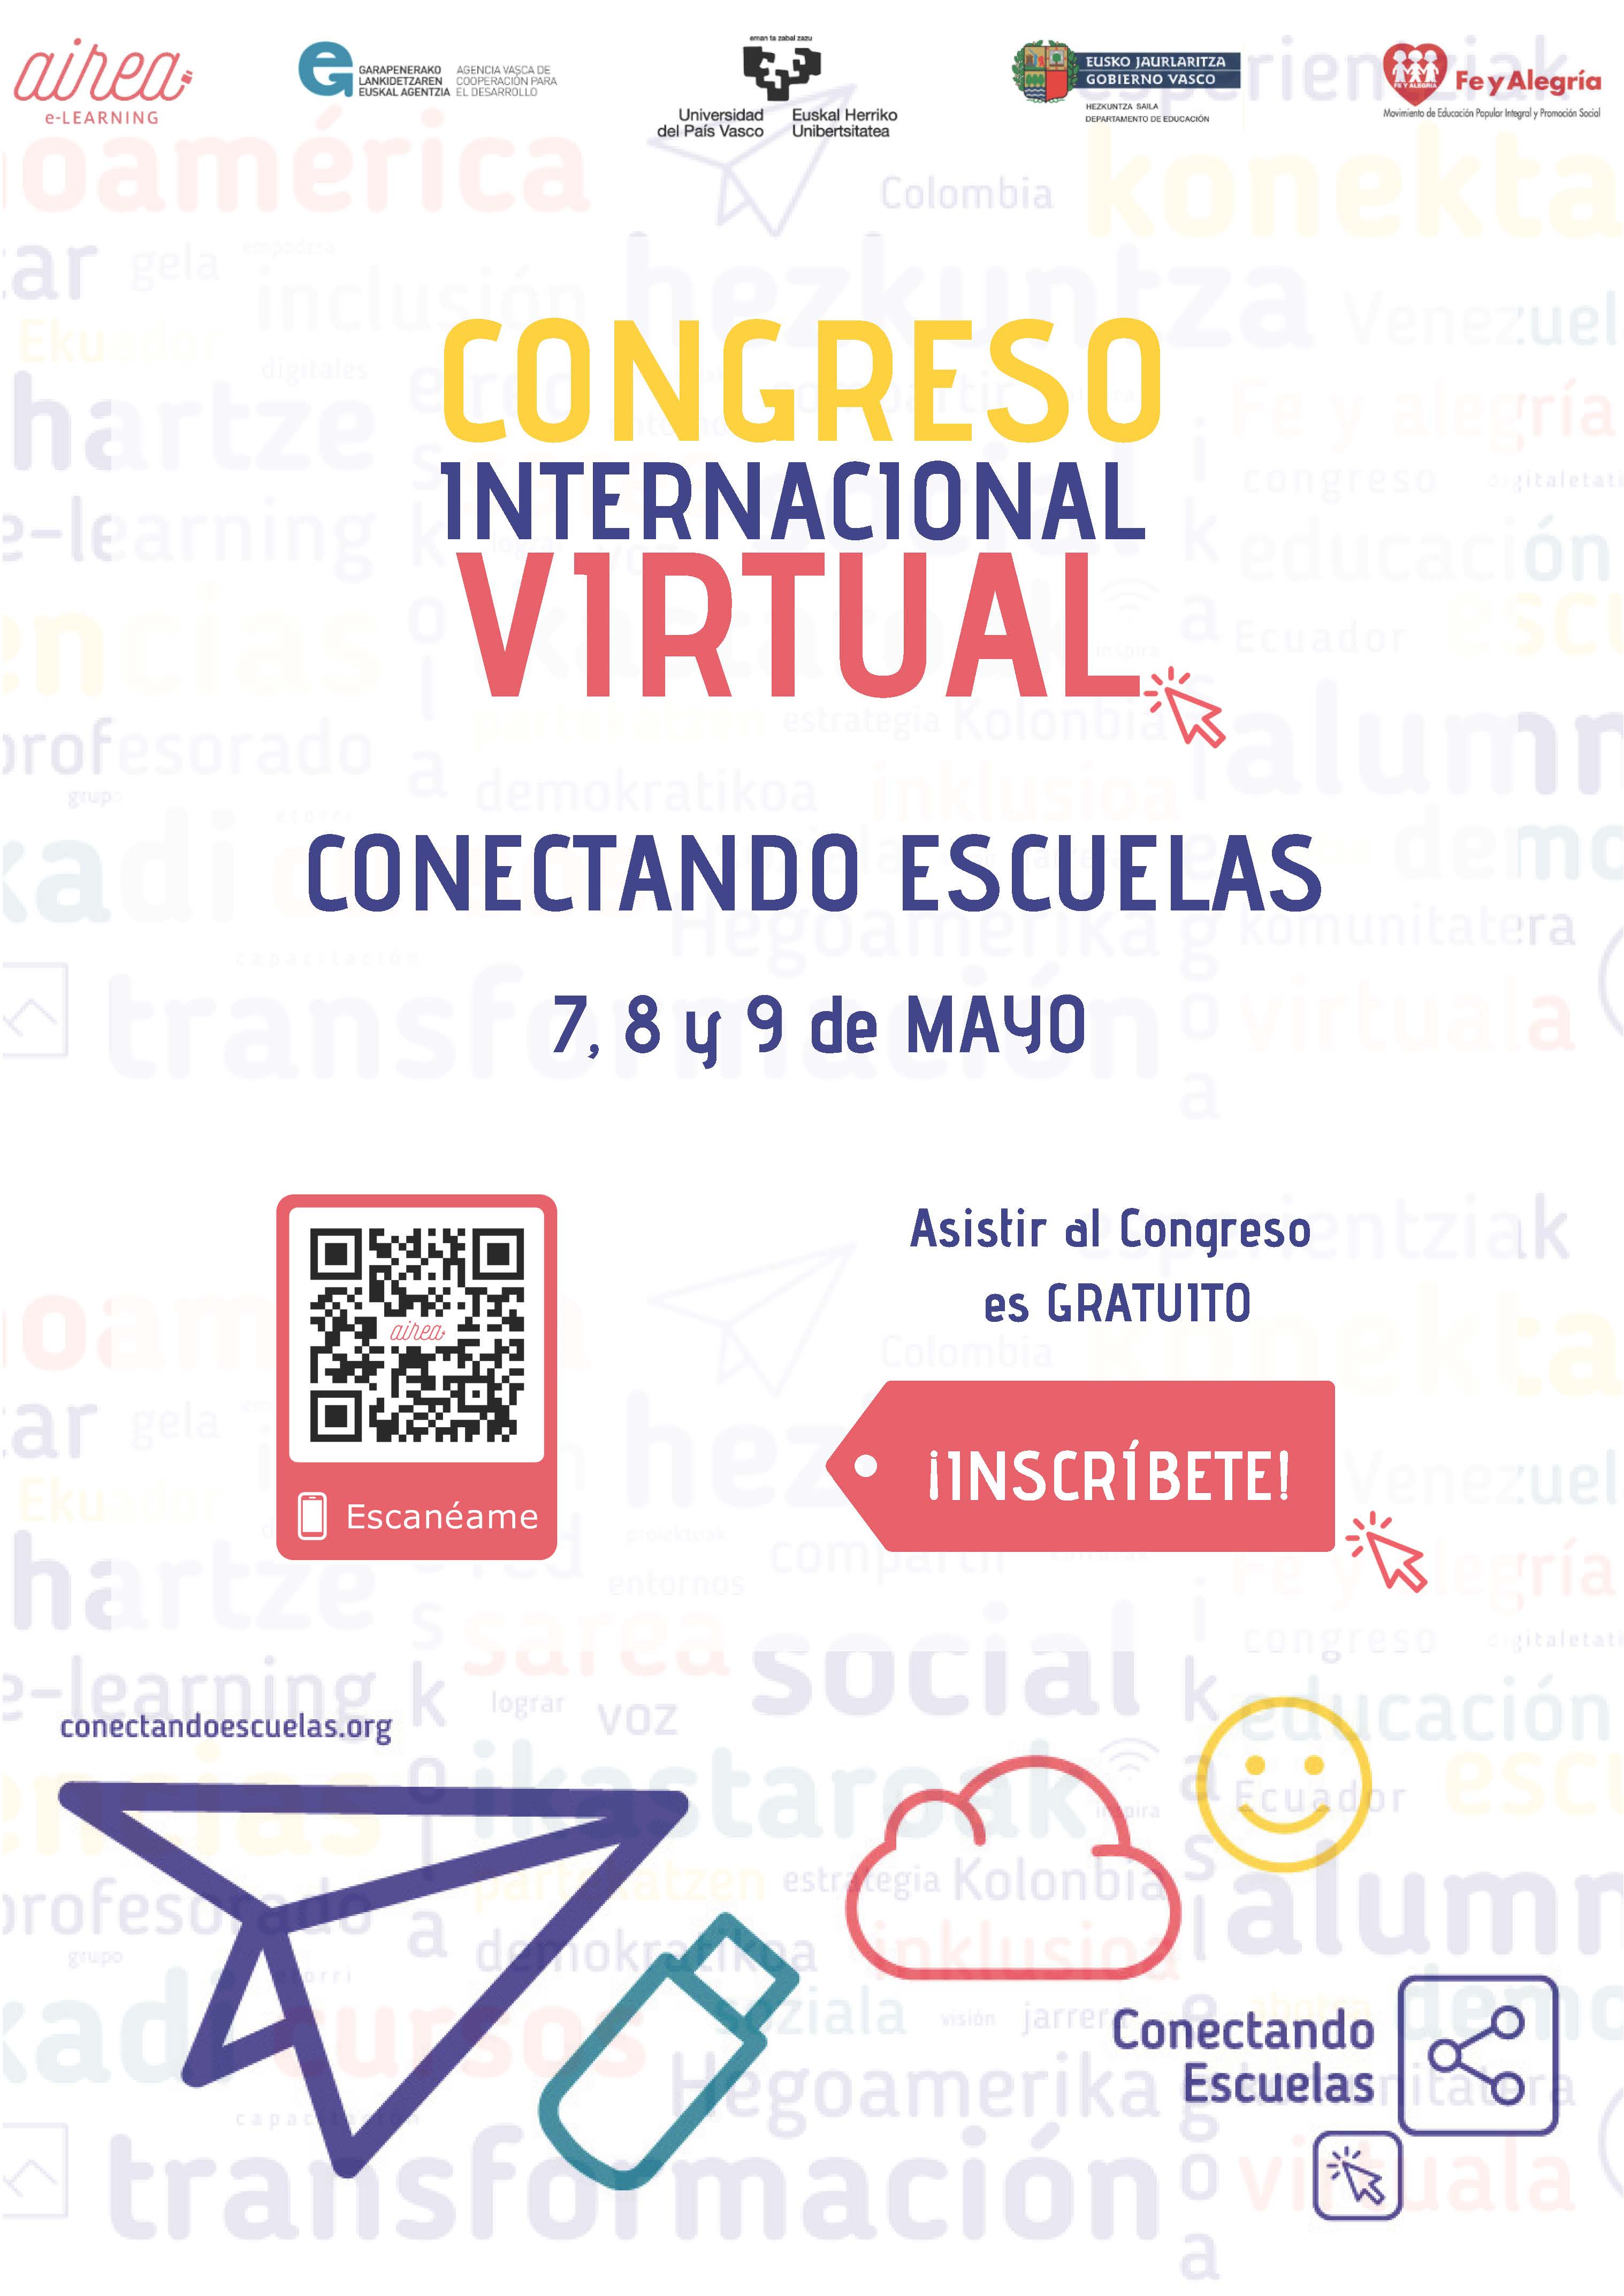 7, 8 y 9 de mayo Congreso internacional virtual. Conectando escuelas